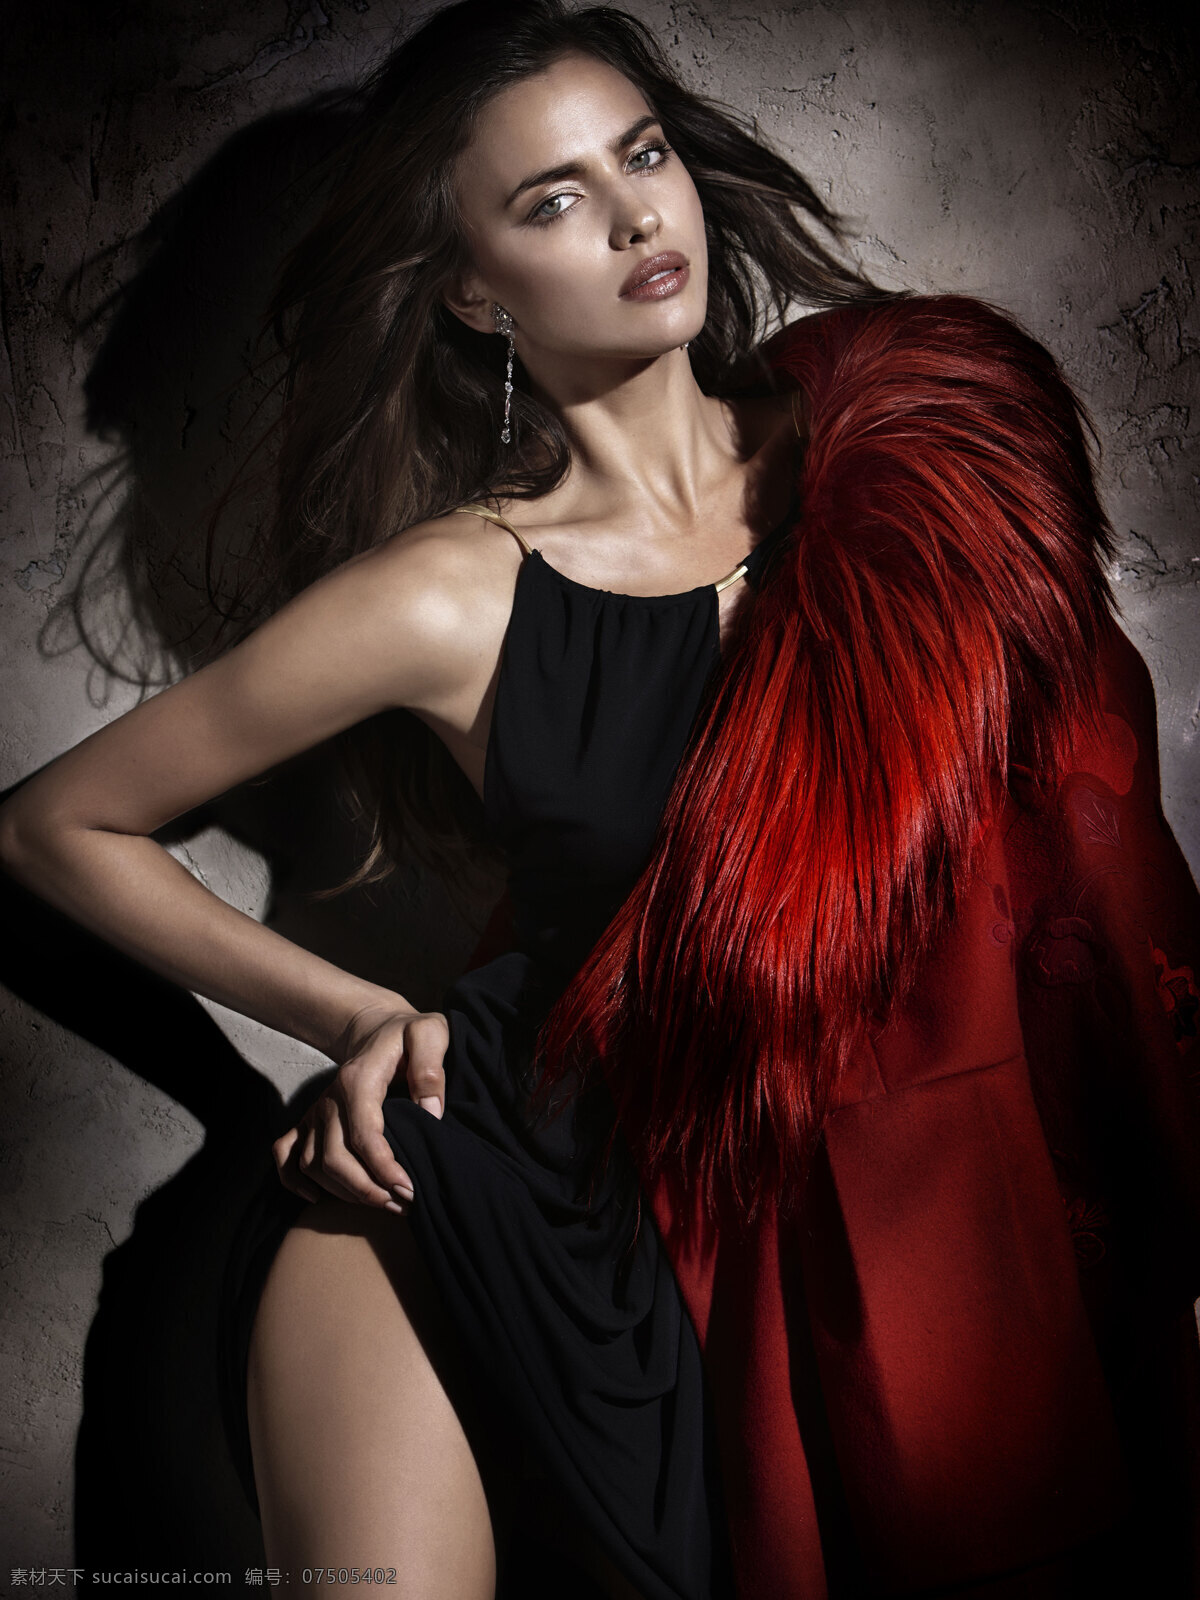 美女 irina shayk 伊莉娜莎伊克 模特 写真 超模 名模 性感 气质 风情 晚礼服 红色 大片 贵妇 美腿 身材 皮草 美女明星 明星偶像 人物图库